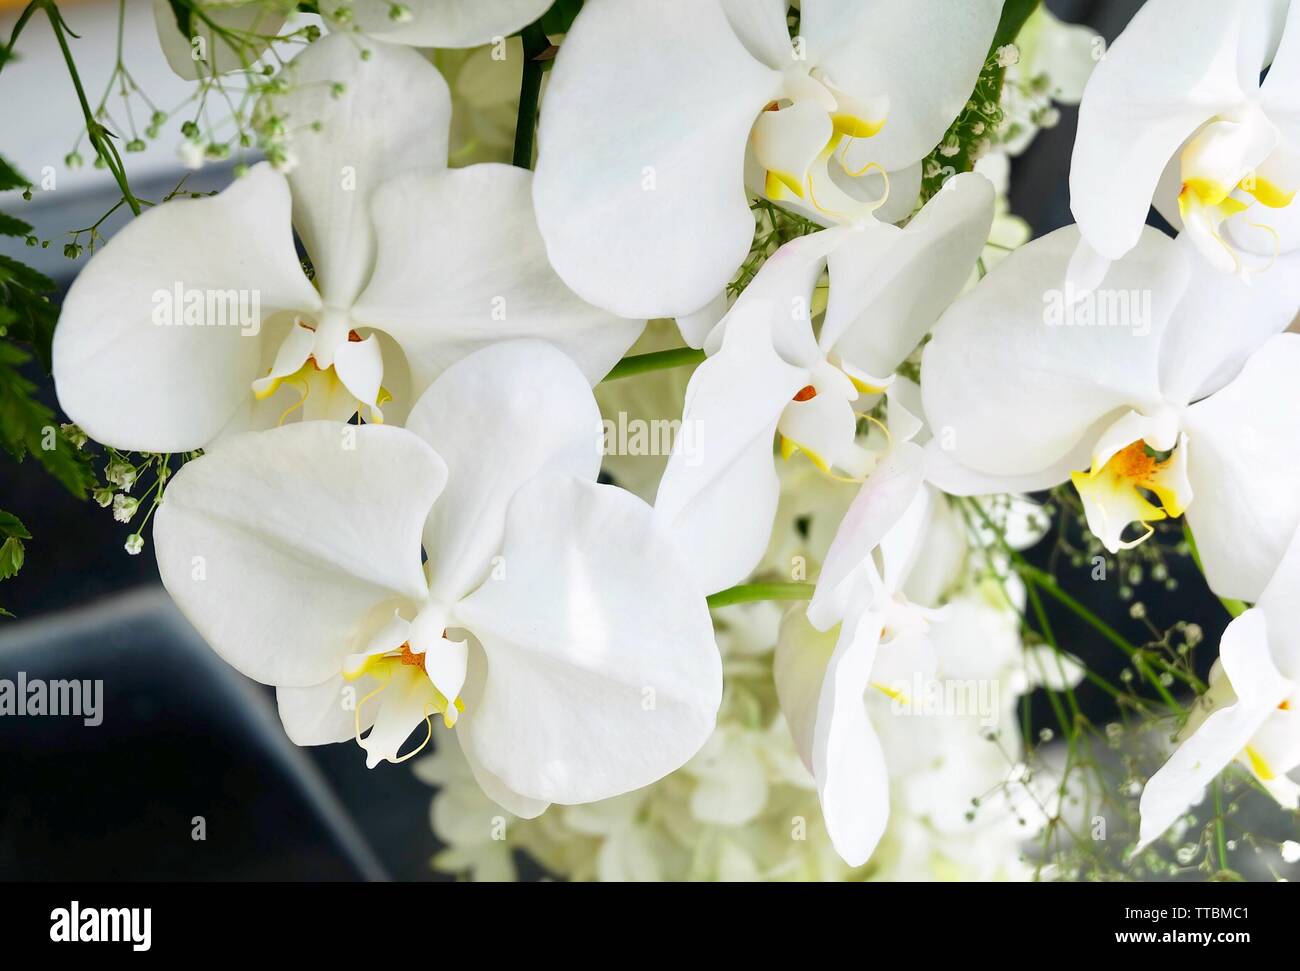 Flower and Plant, Beautiful White Phalaenopsis or Doritaenopsis Orchid Flower Streak For Garden Decor. Stock Photo